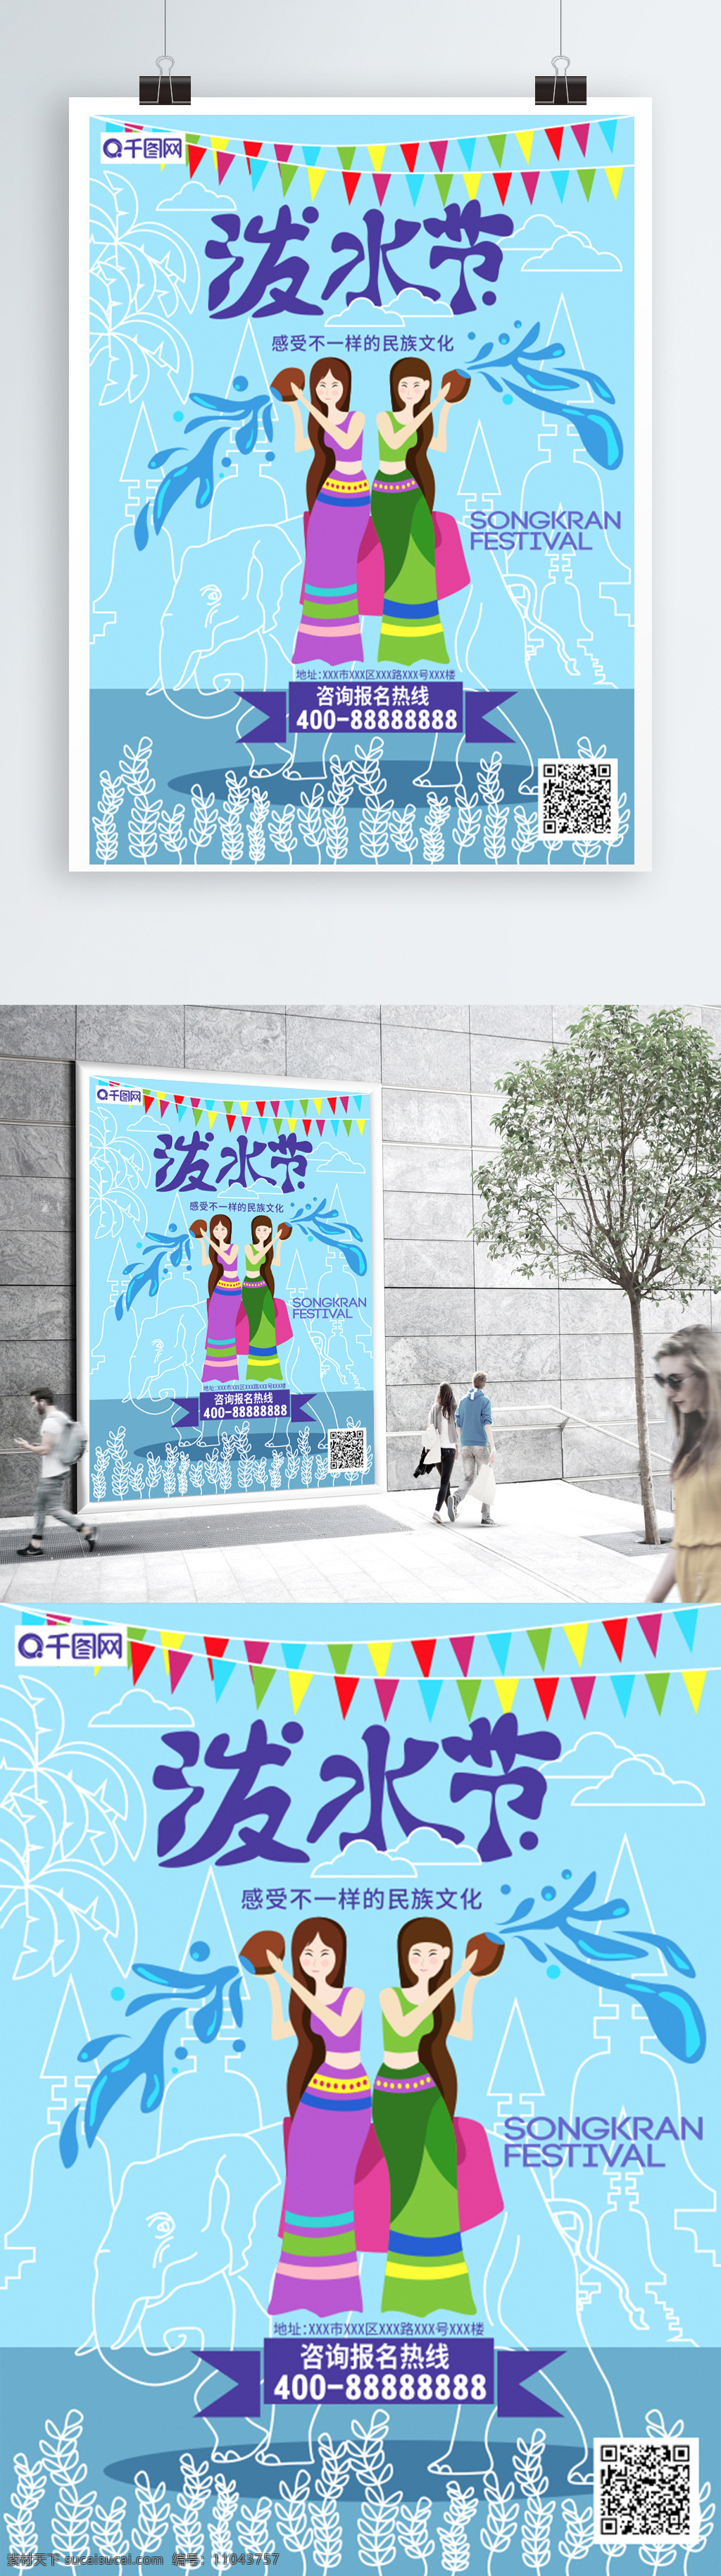 蓝色 手绘 虚实 象生 泼水节 海报 宣传单 虚实象生 大象 泼水 女人 节日 传统节日 民族文化